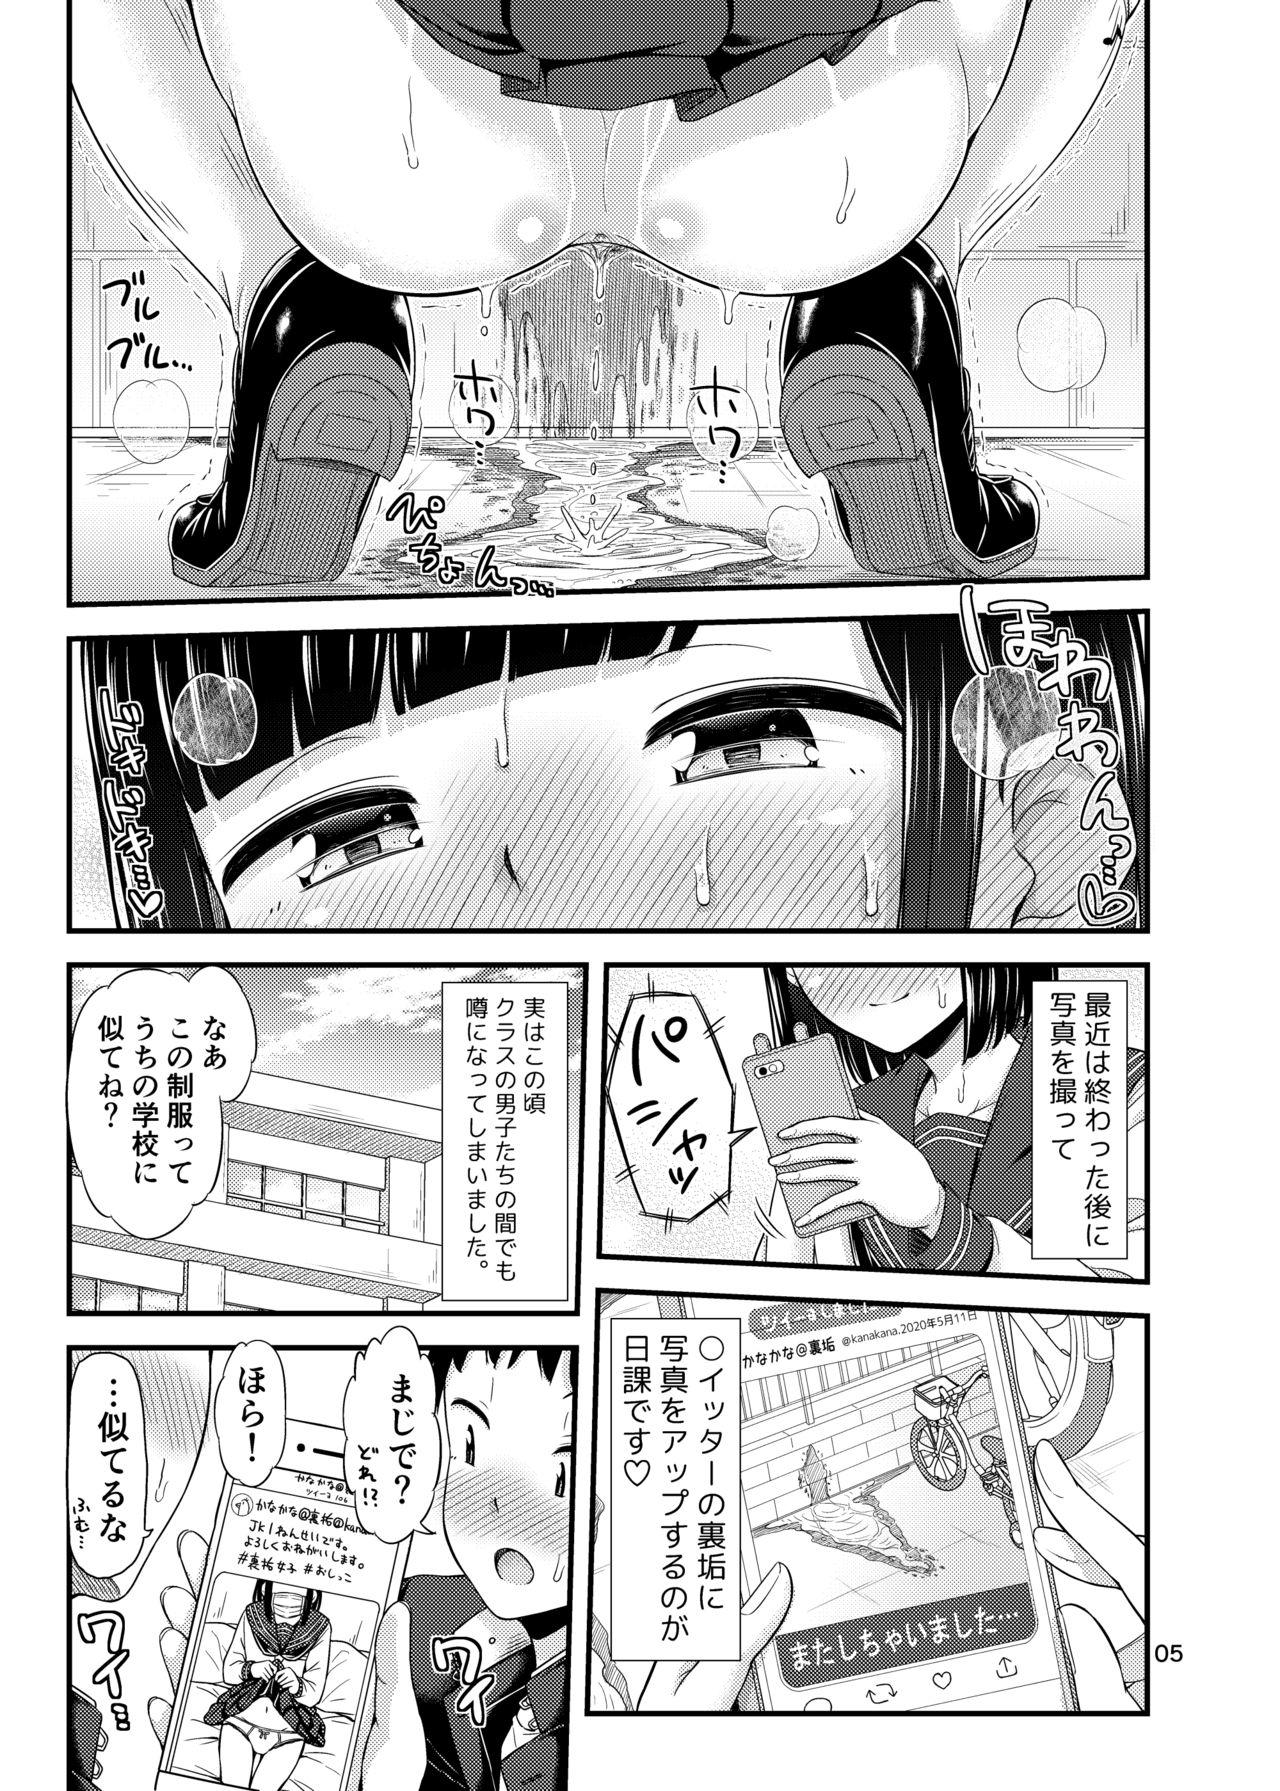 Hidden かなでまーきんぐ! - Original Sucks - Page 6